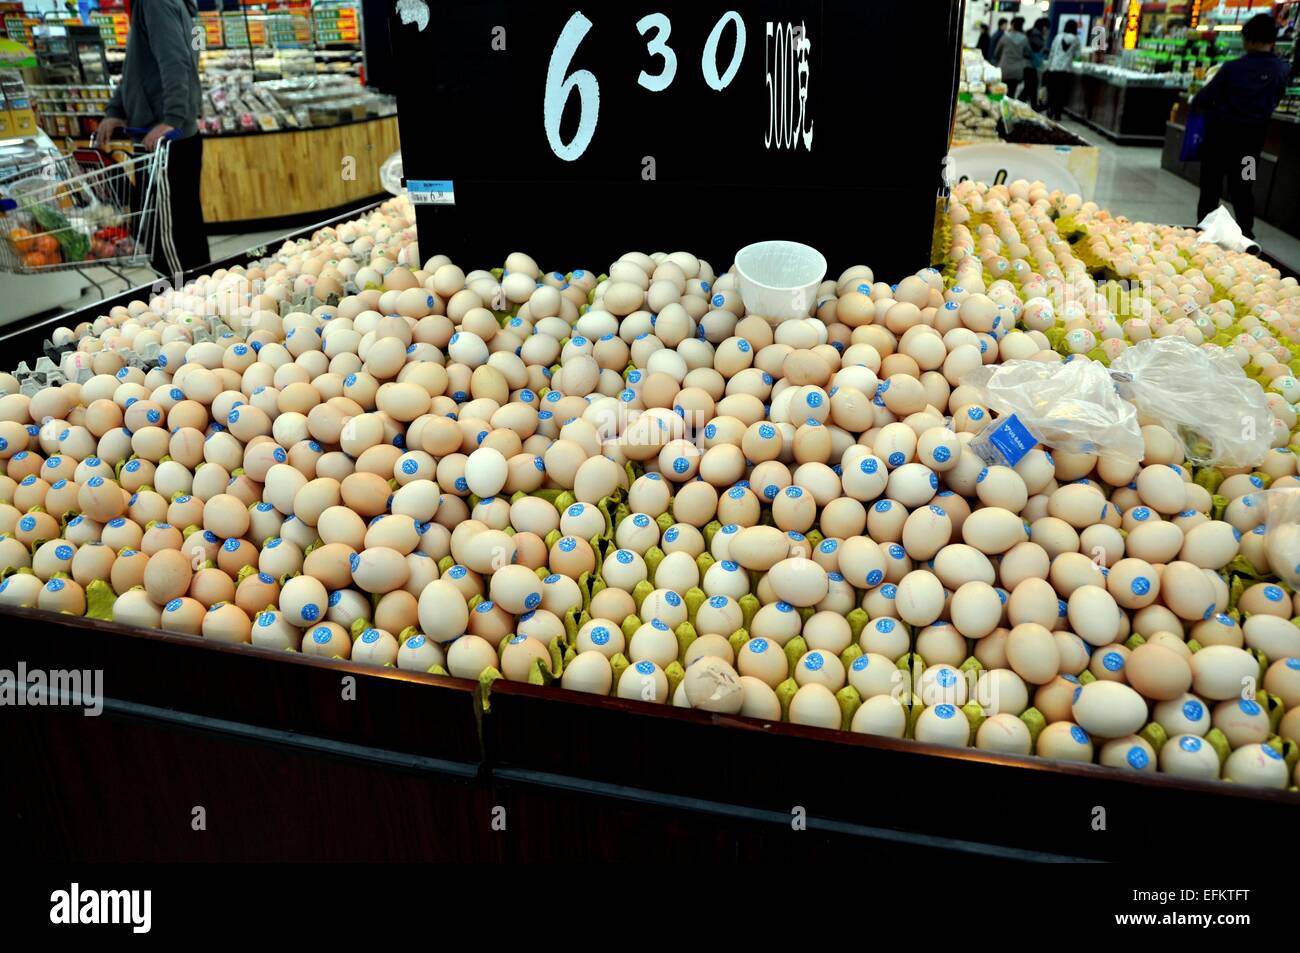 Chengdu, China: Eine Anzeige von frischen Eiern, gestempelt jeweils mit einem blauen Siegel, in einem großen Wal-Mart Supermarkt Stockfoto